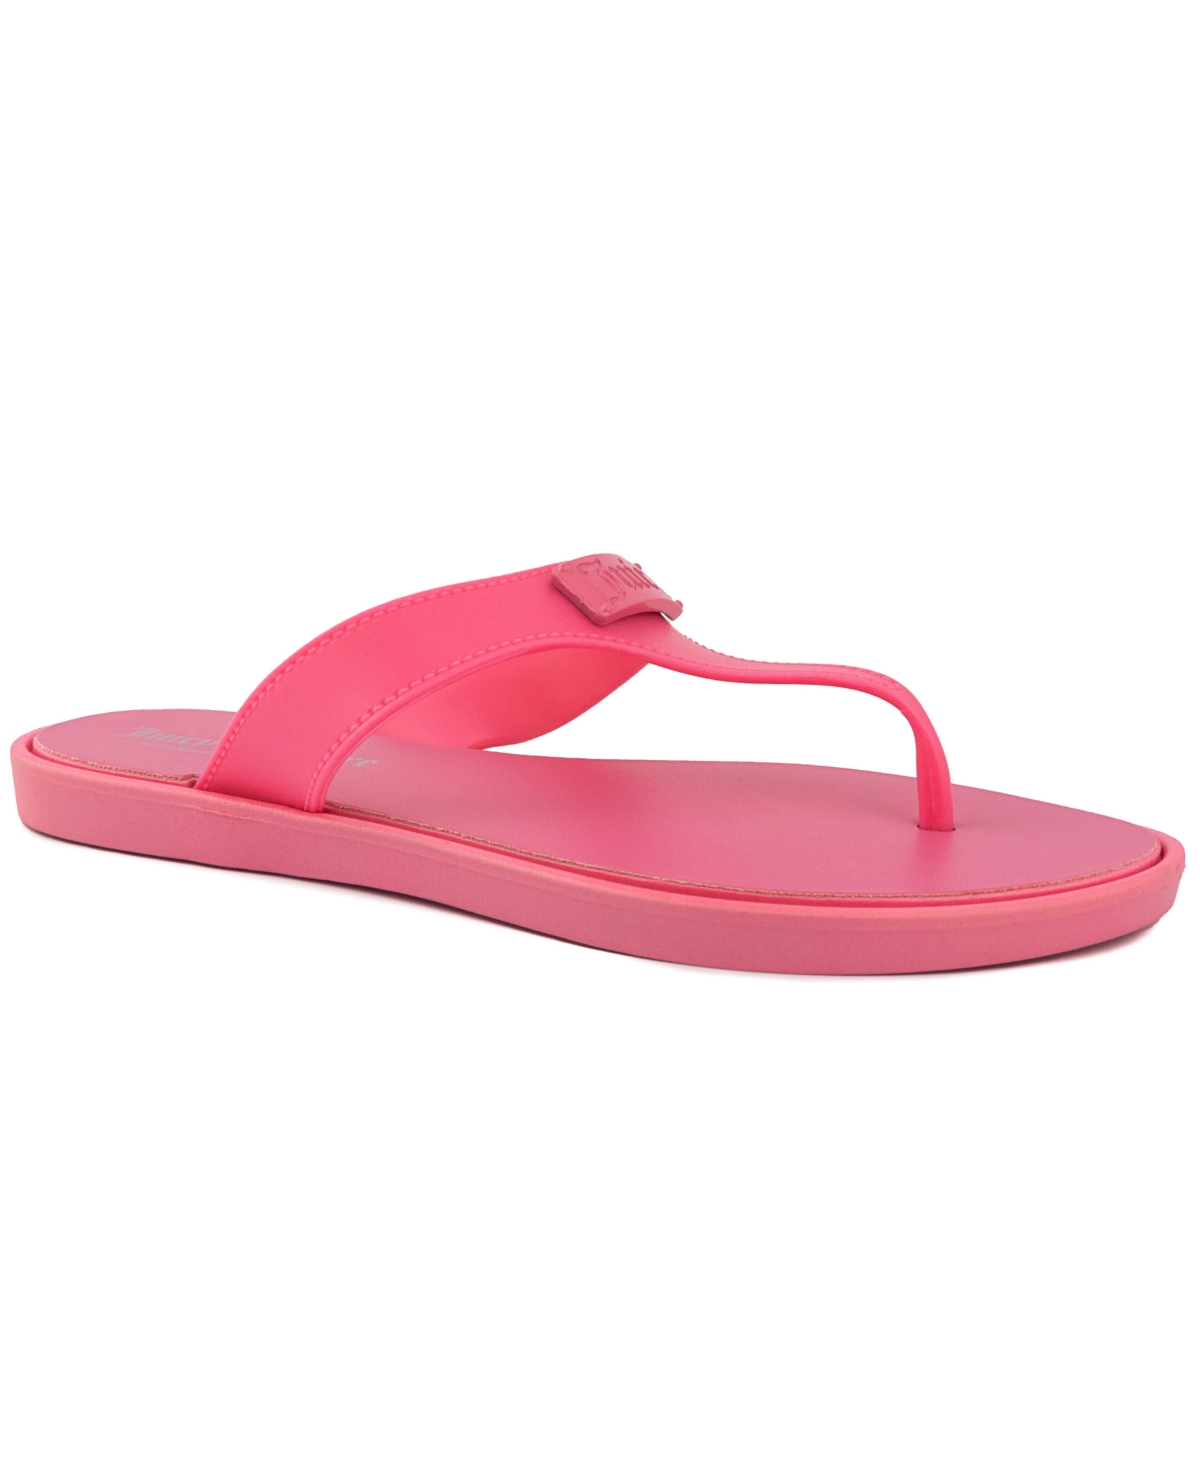 Women's Seneca Thong Sandal - Pink